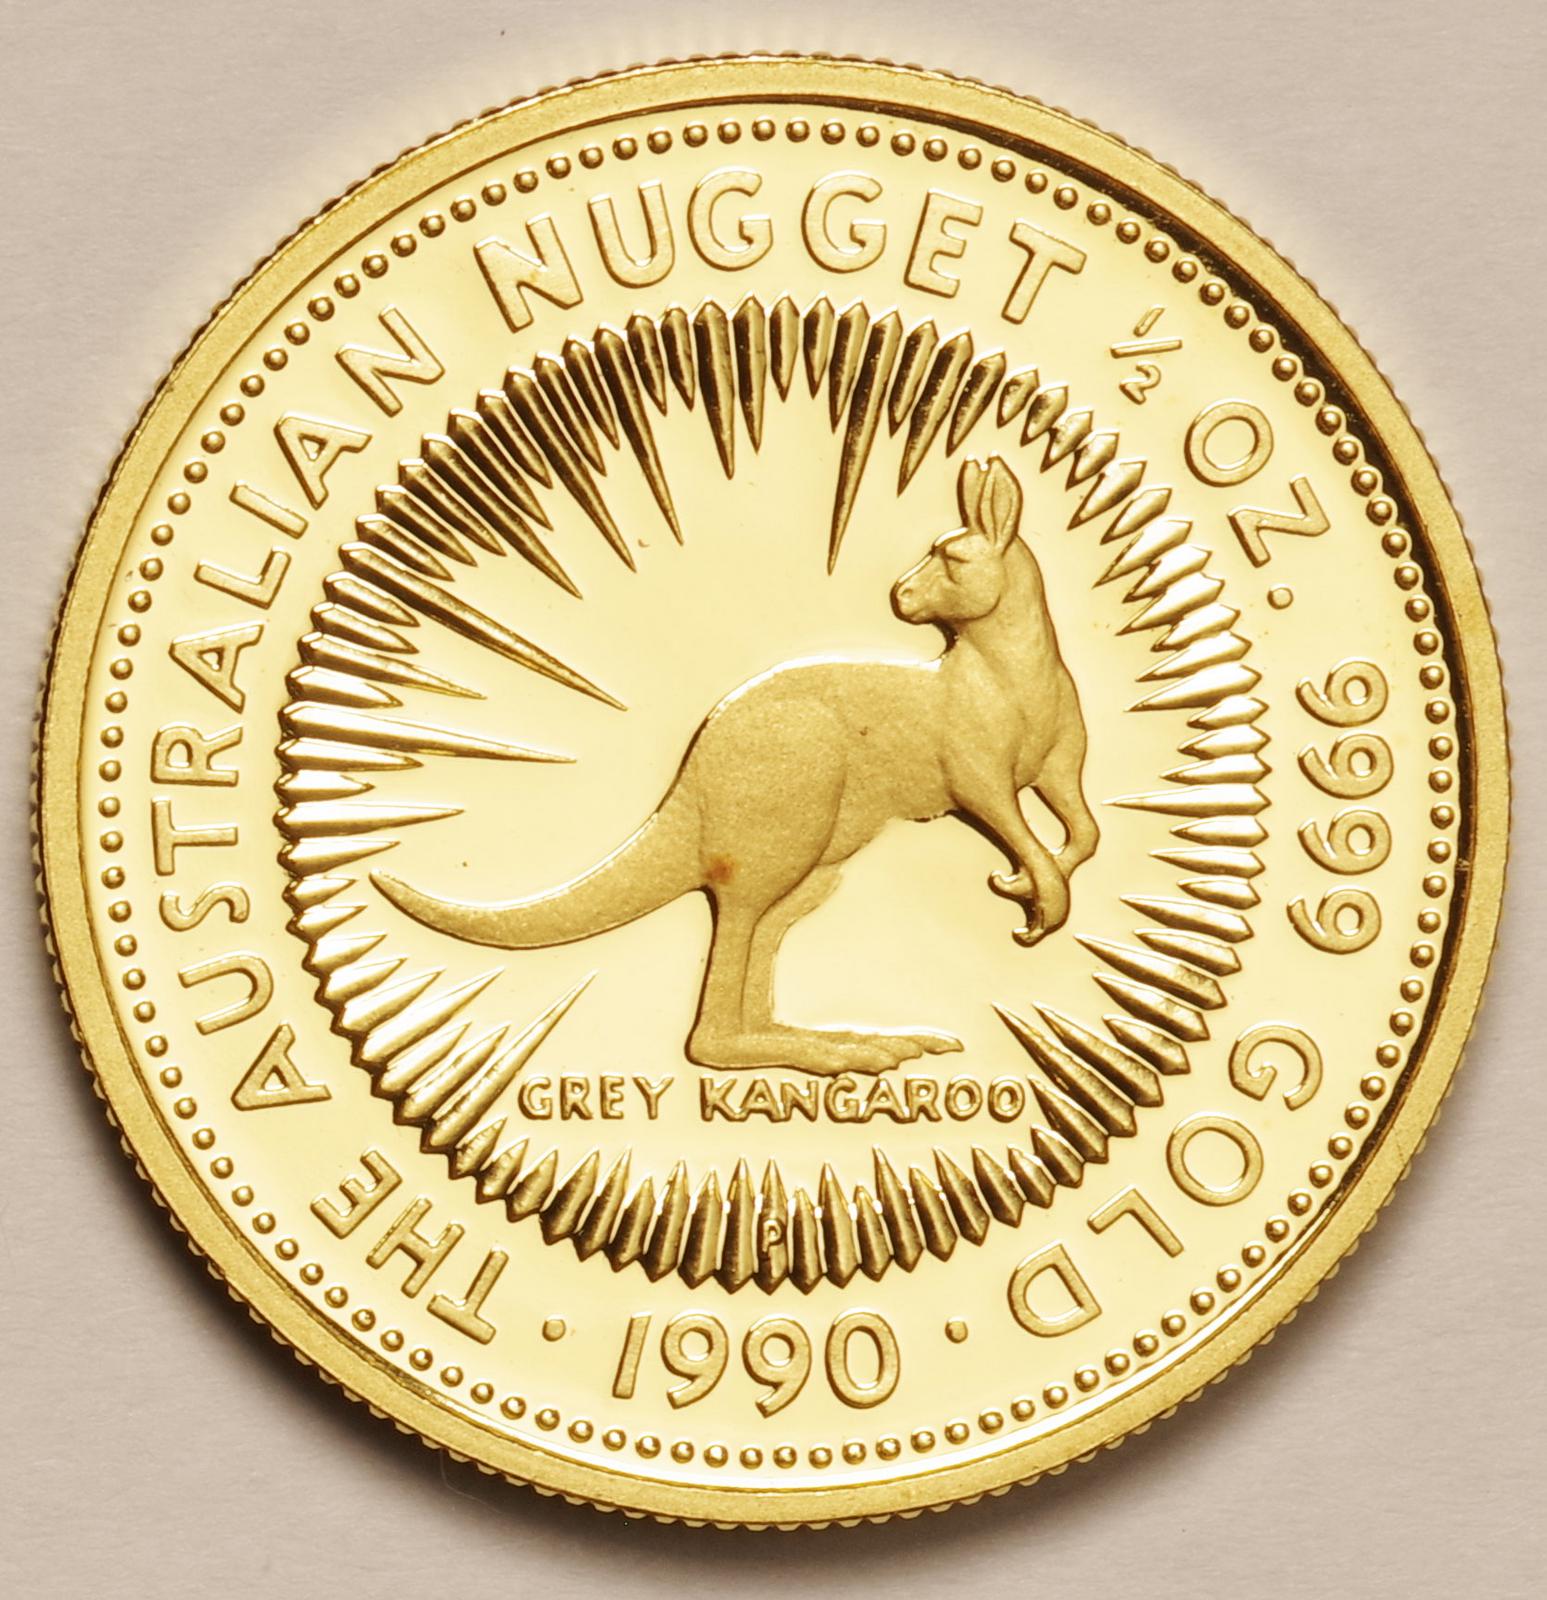 ｵｰｽﾄﾗﾘｱ-Australia ナゲットカンガルー 50ドル金貨 1/2オンス 1990年 